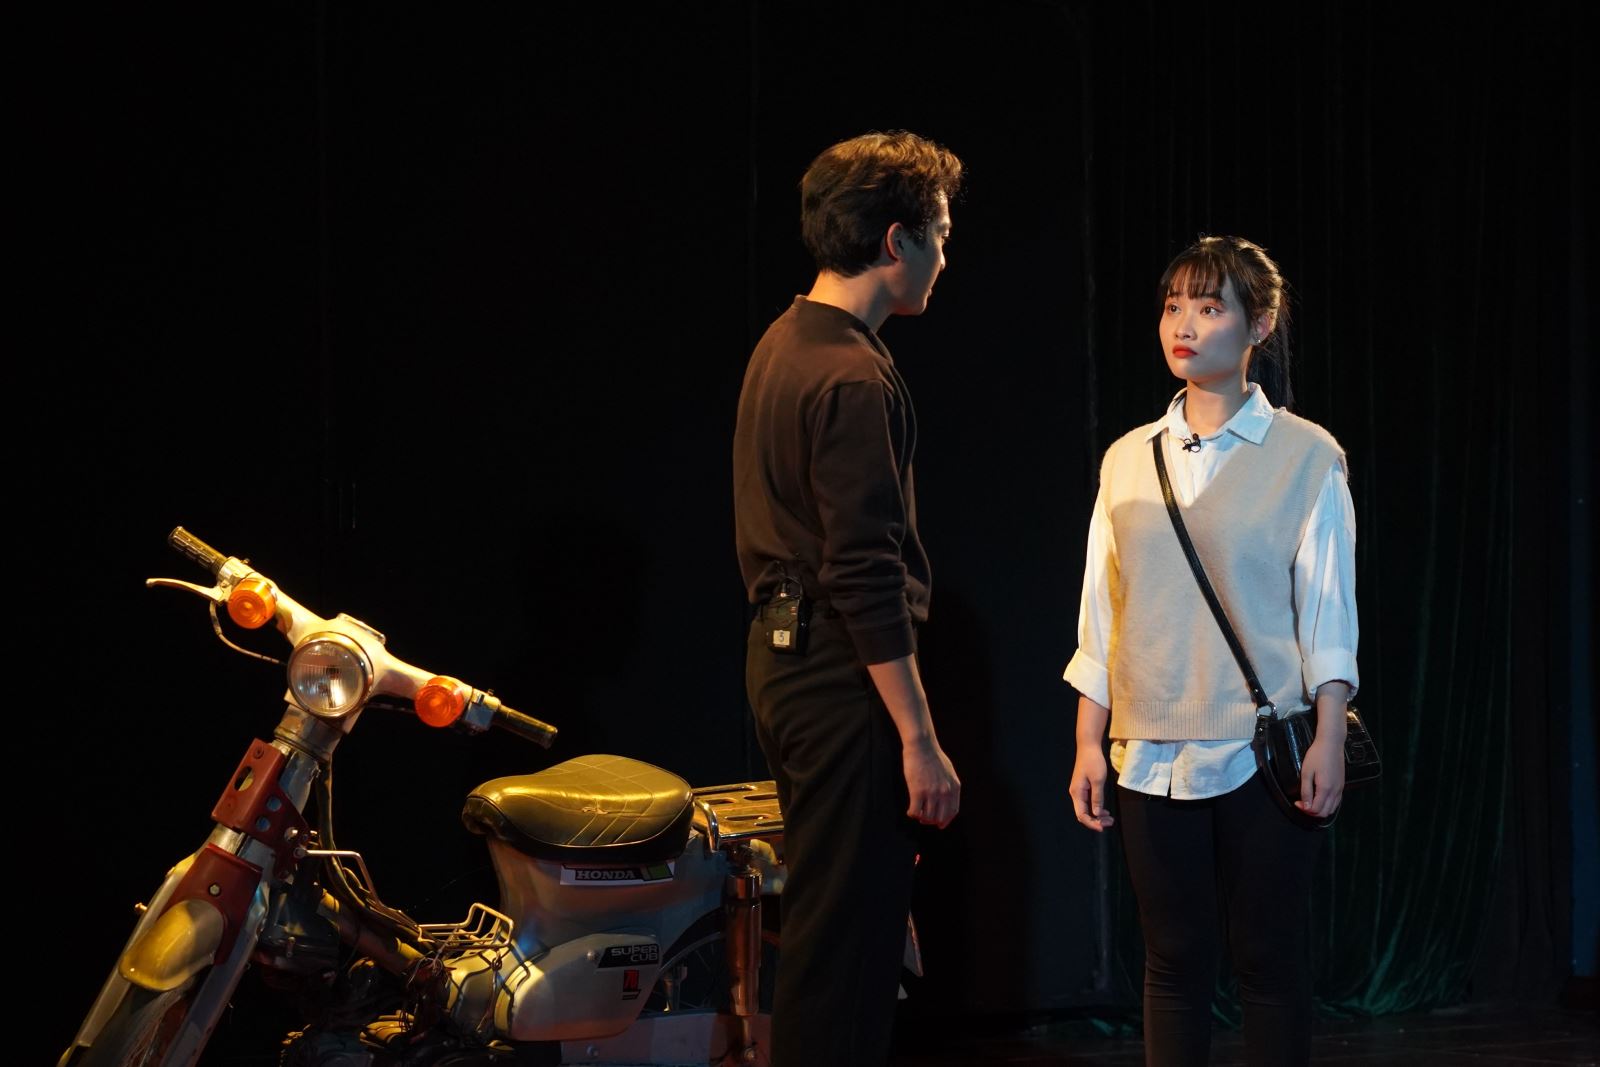 Nhạc kịch “Cô gái và chiếc xe máy” - thành quả hợp tác giữa Nhà hát Kịch Việt Nam và Nhà hát Acsan (Hàn Quốc)